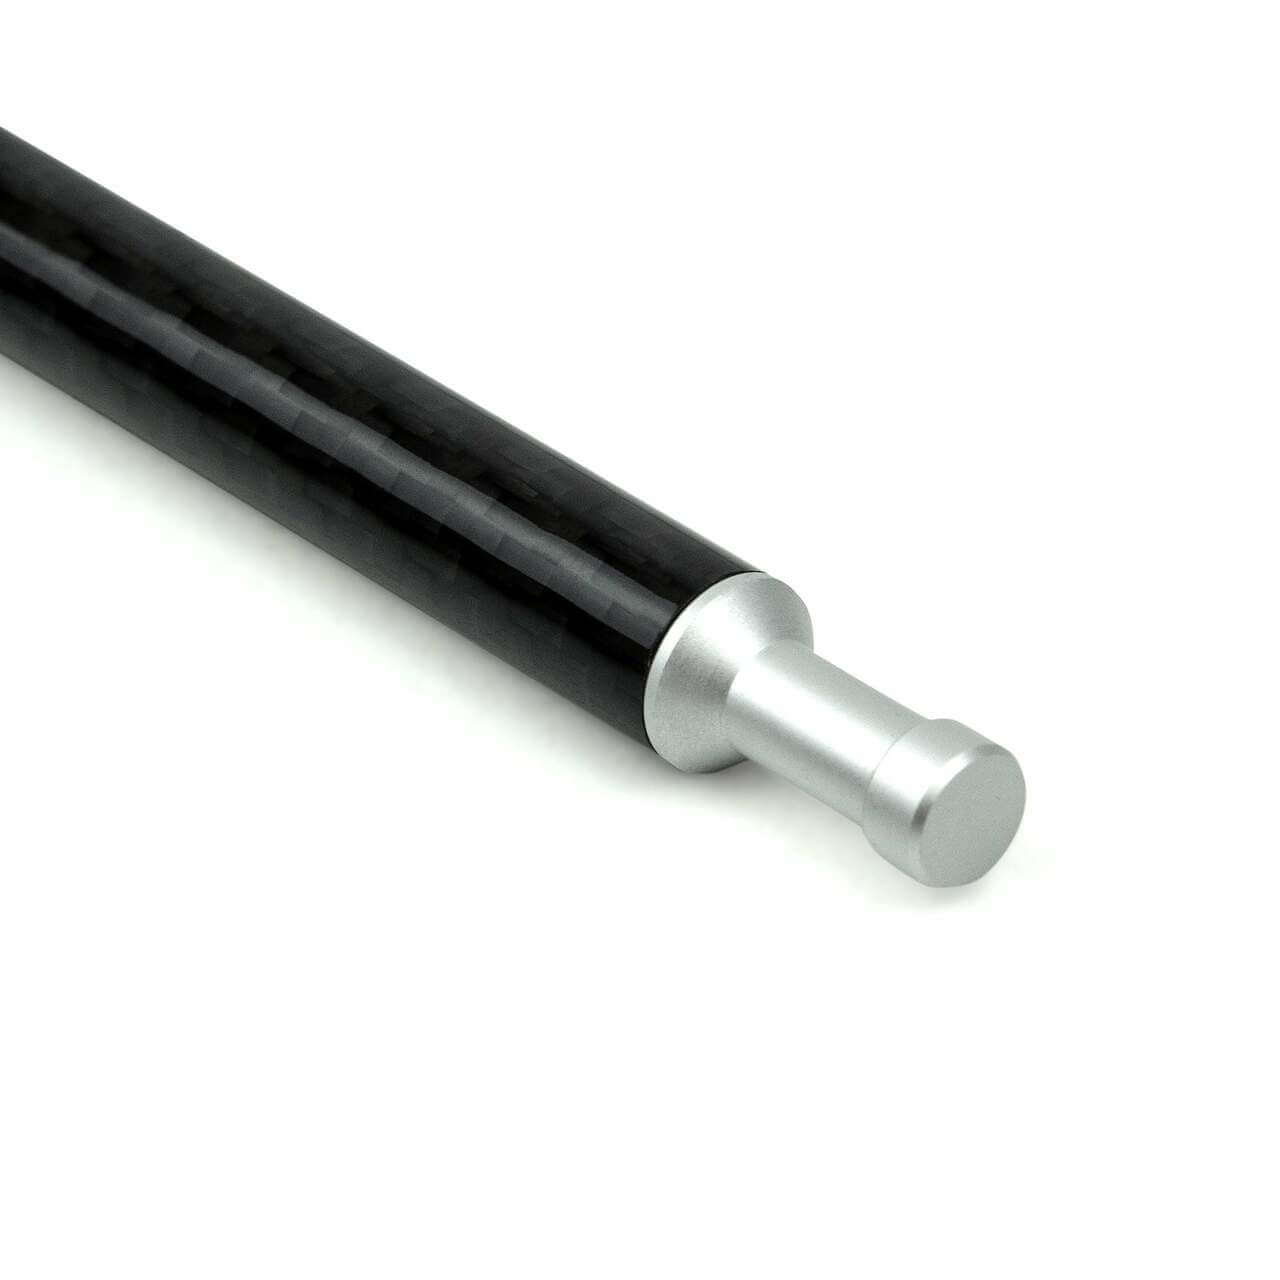 Gram-counter Gear Carbon Tent Pole - 125 cm 5 Section